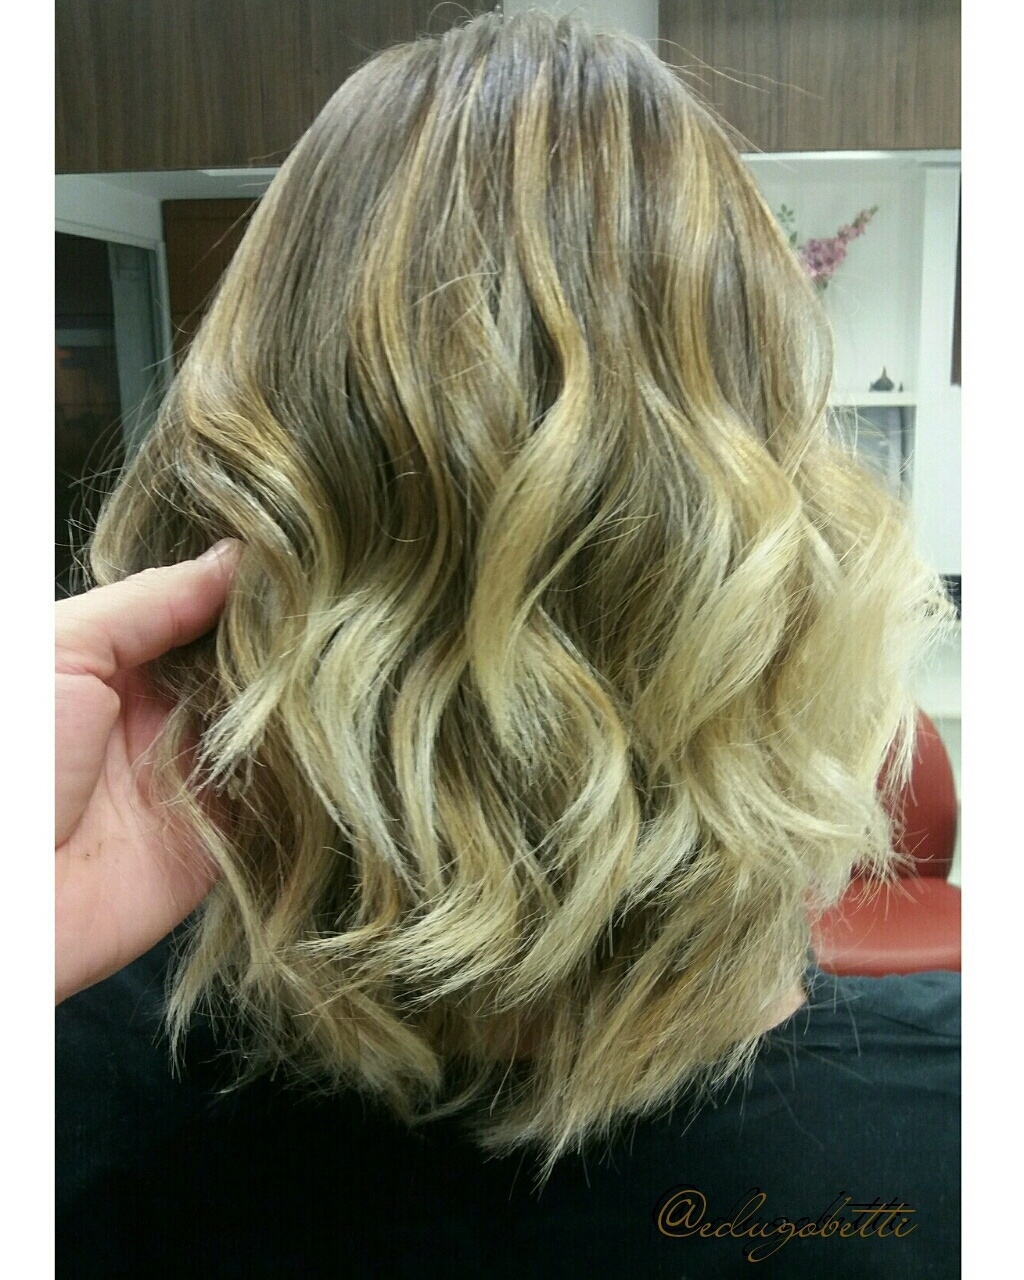 Trabalho de corte e cor.
#cut #haircontour #cabelossaudaveis cabelo cabeleireiro(a) stylist / visagista